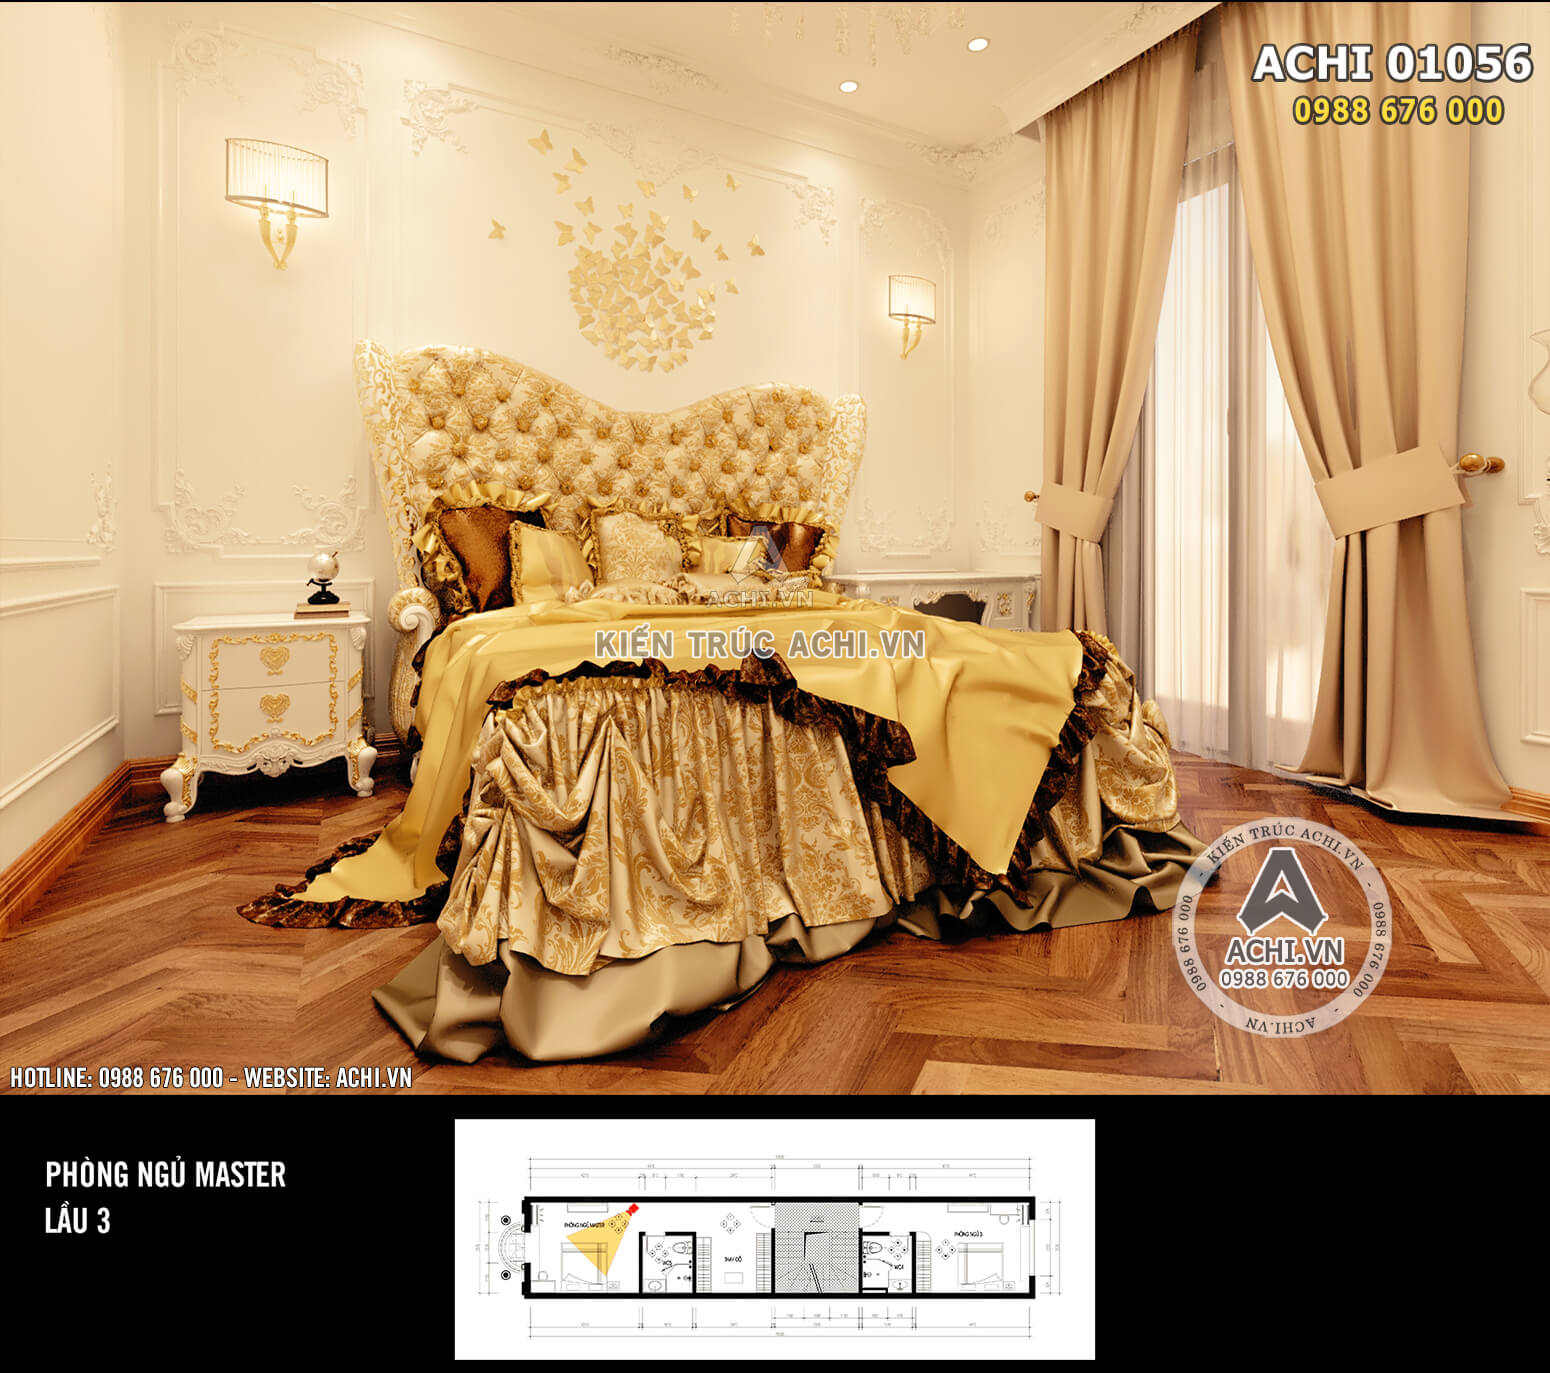 Hình ảnh: Chiếc giường Queen với tone màu vàng vương giả